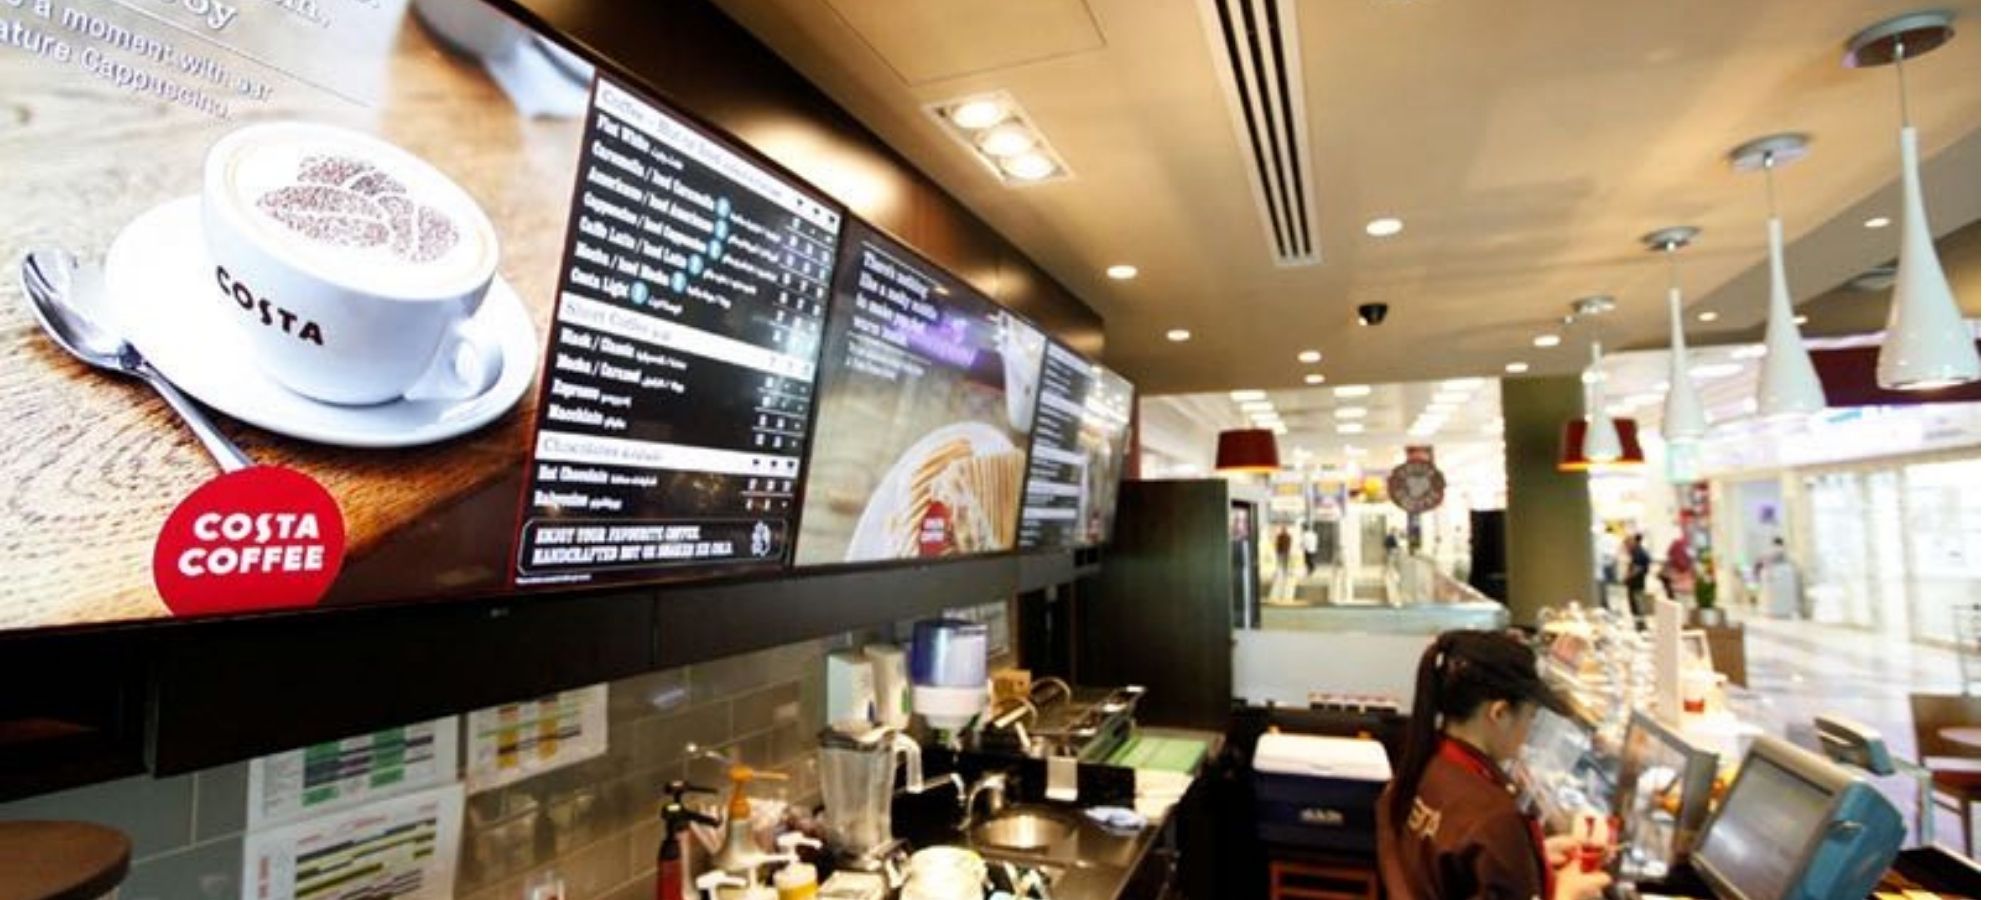 digital menu display in the coffee